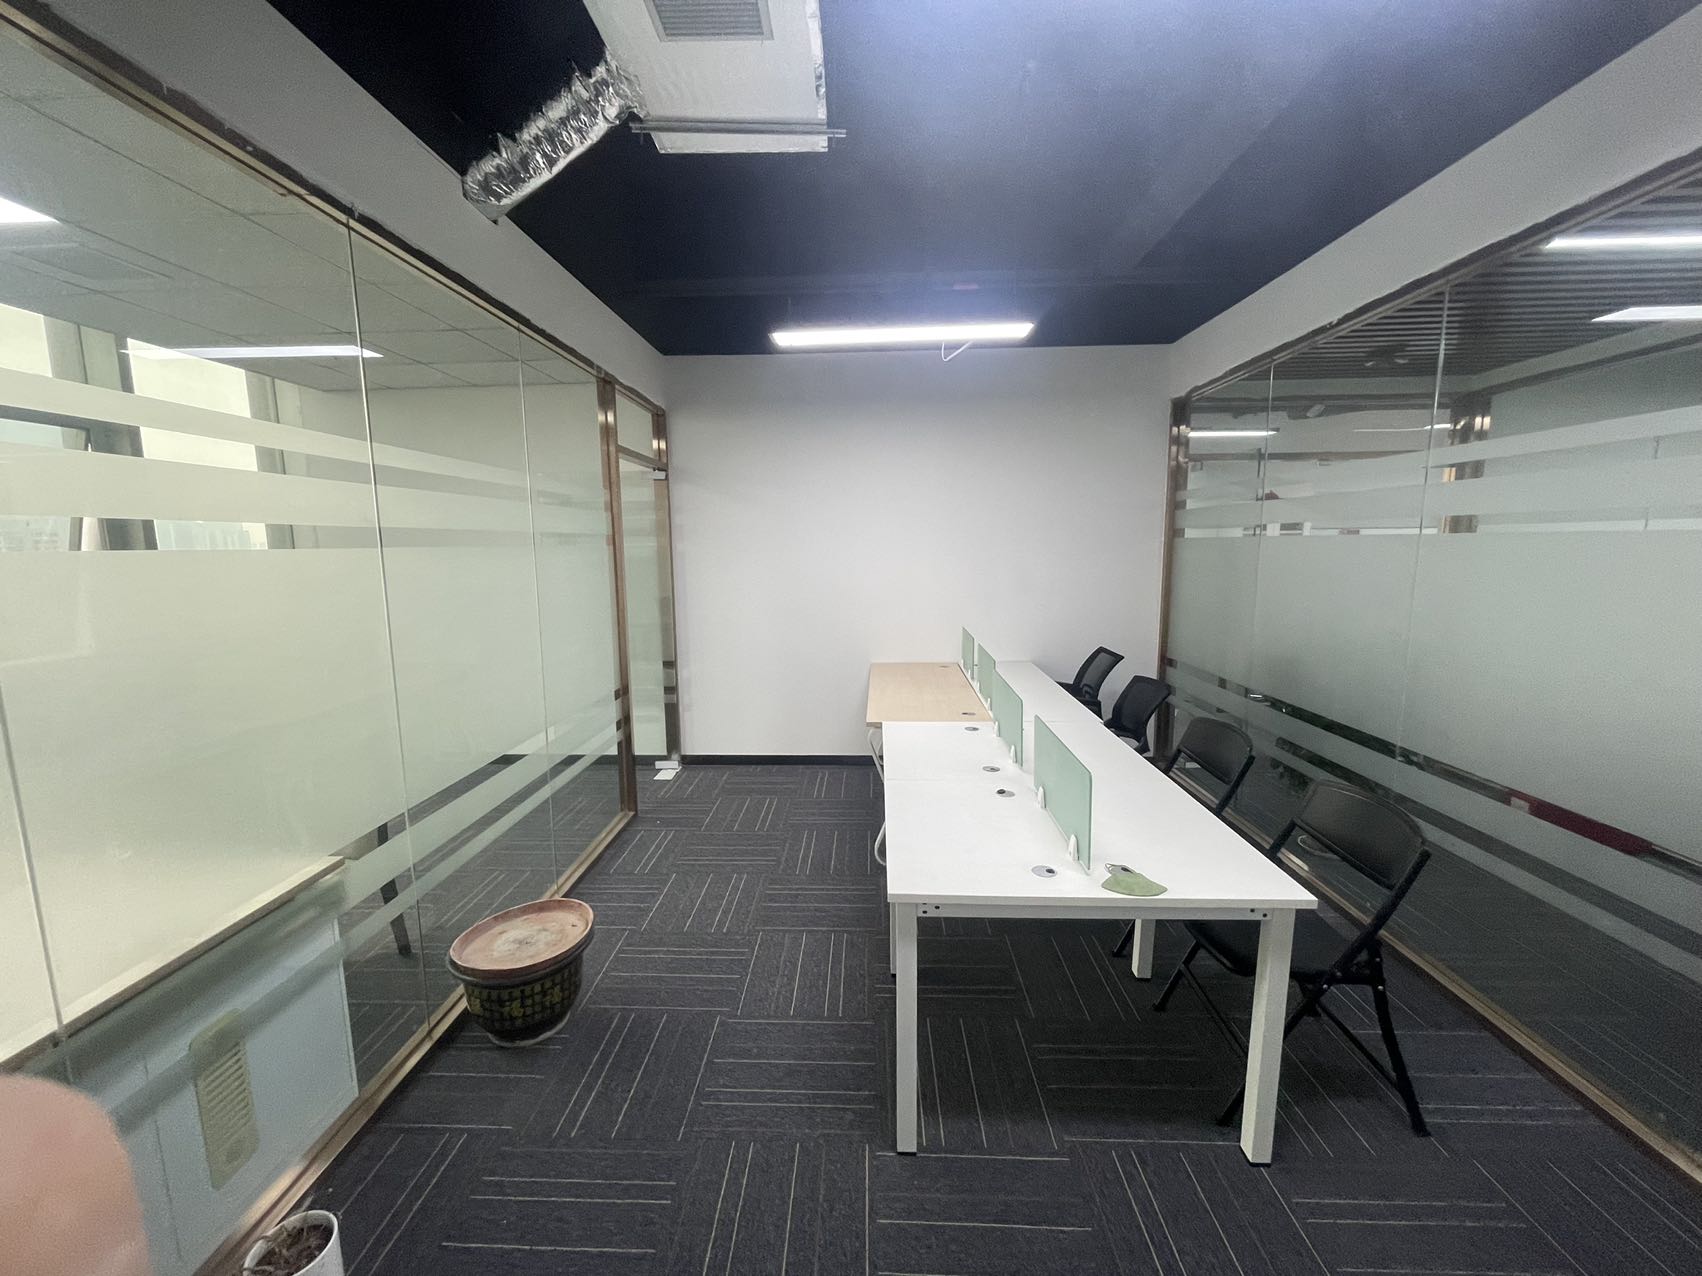 南山桃源地铁站西海明珠78平精装修办公室。